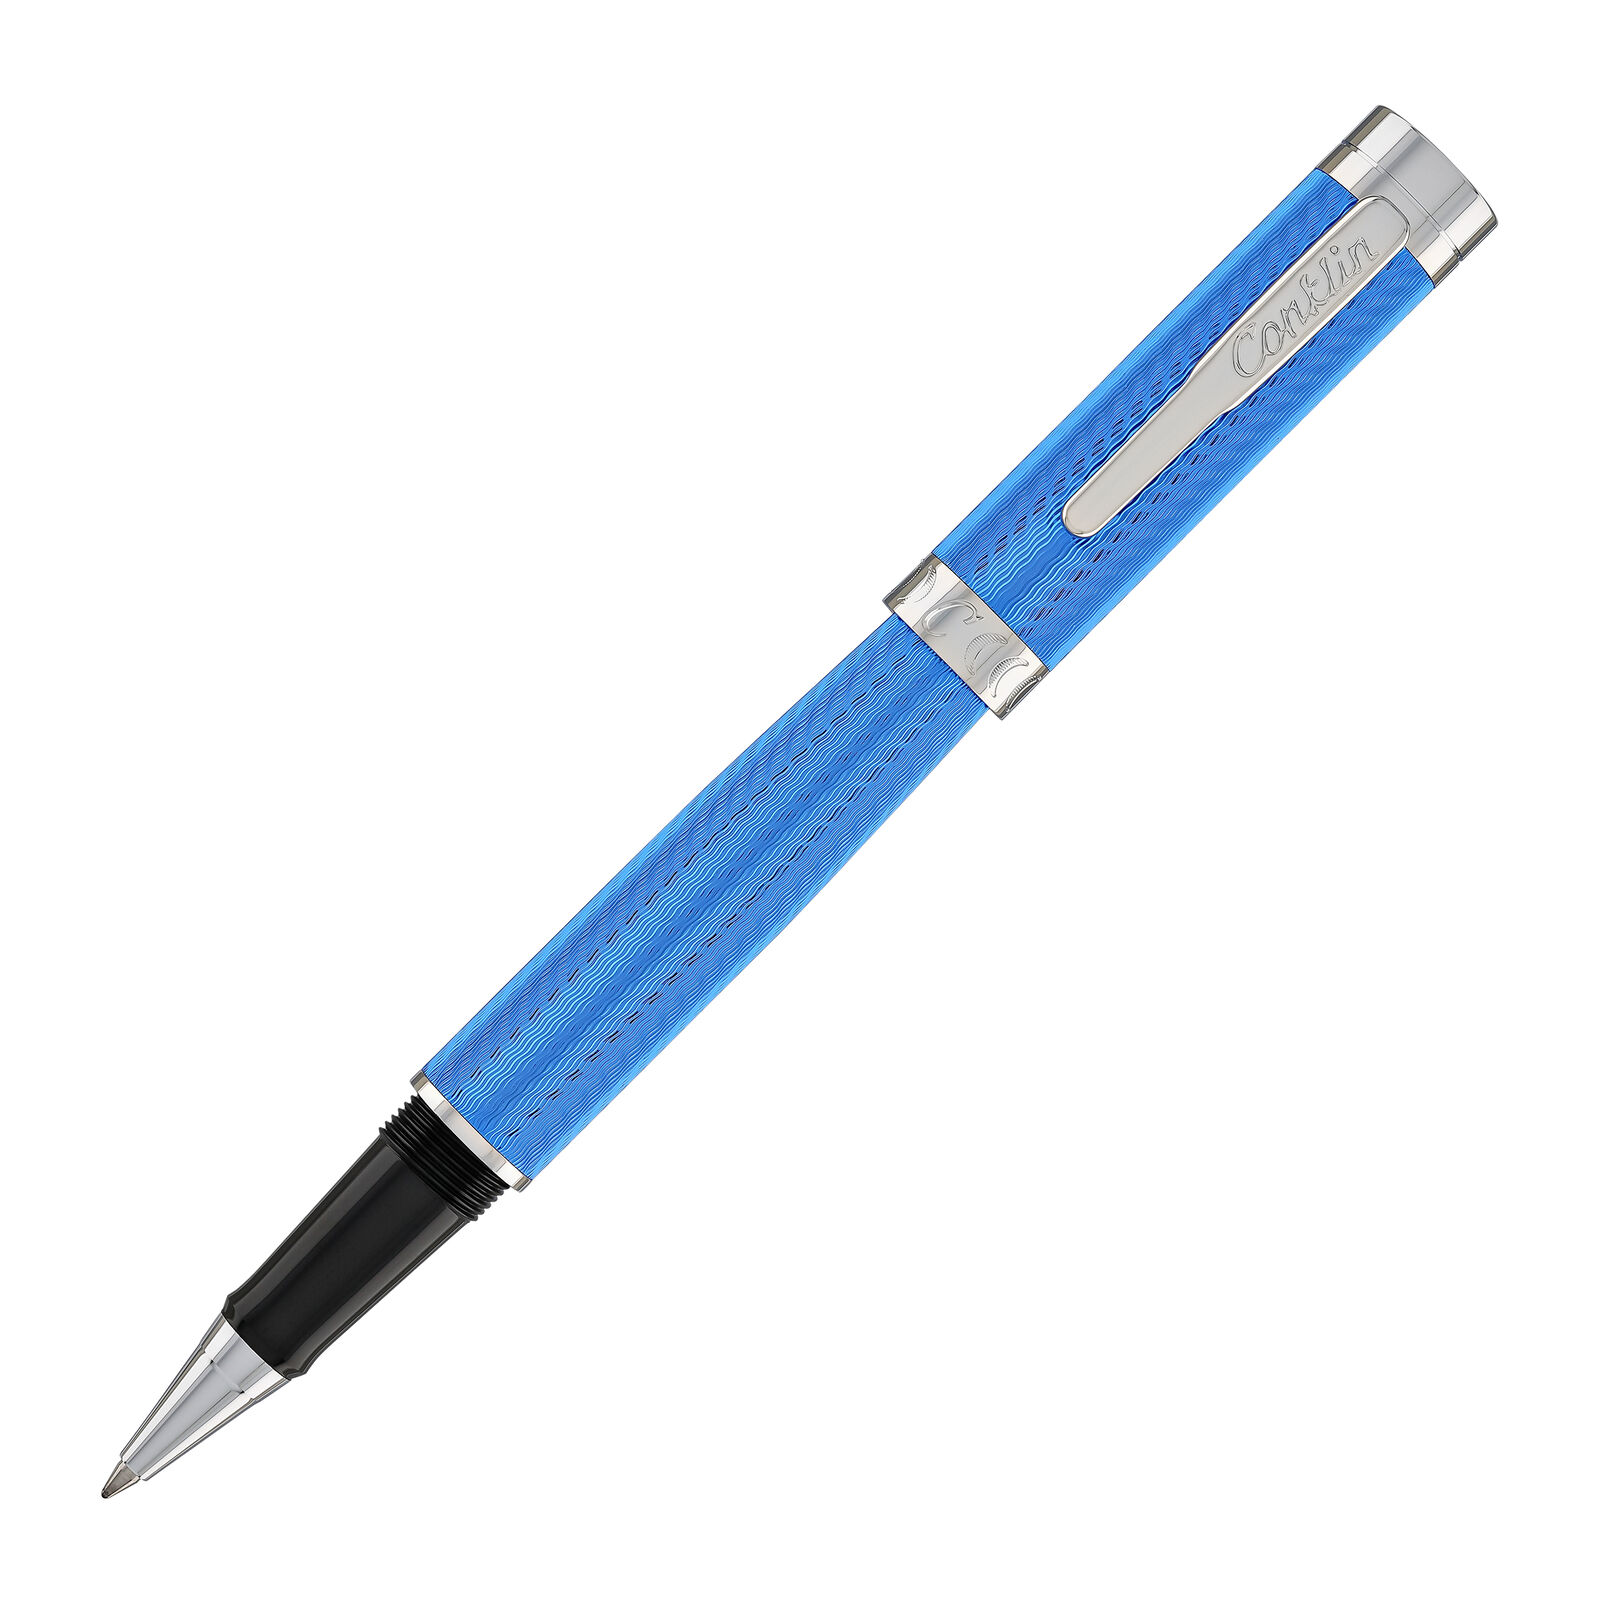 Conklin Herringbone Signature Rollerball Pen in Blue - NEW in Box